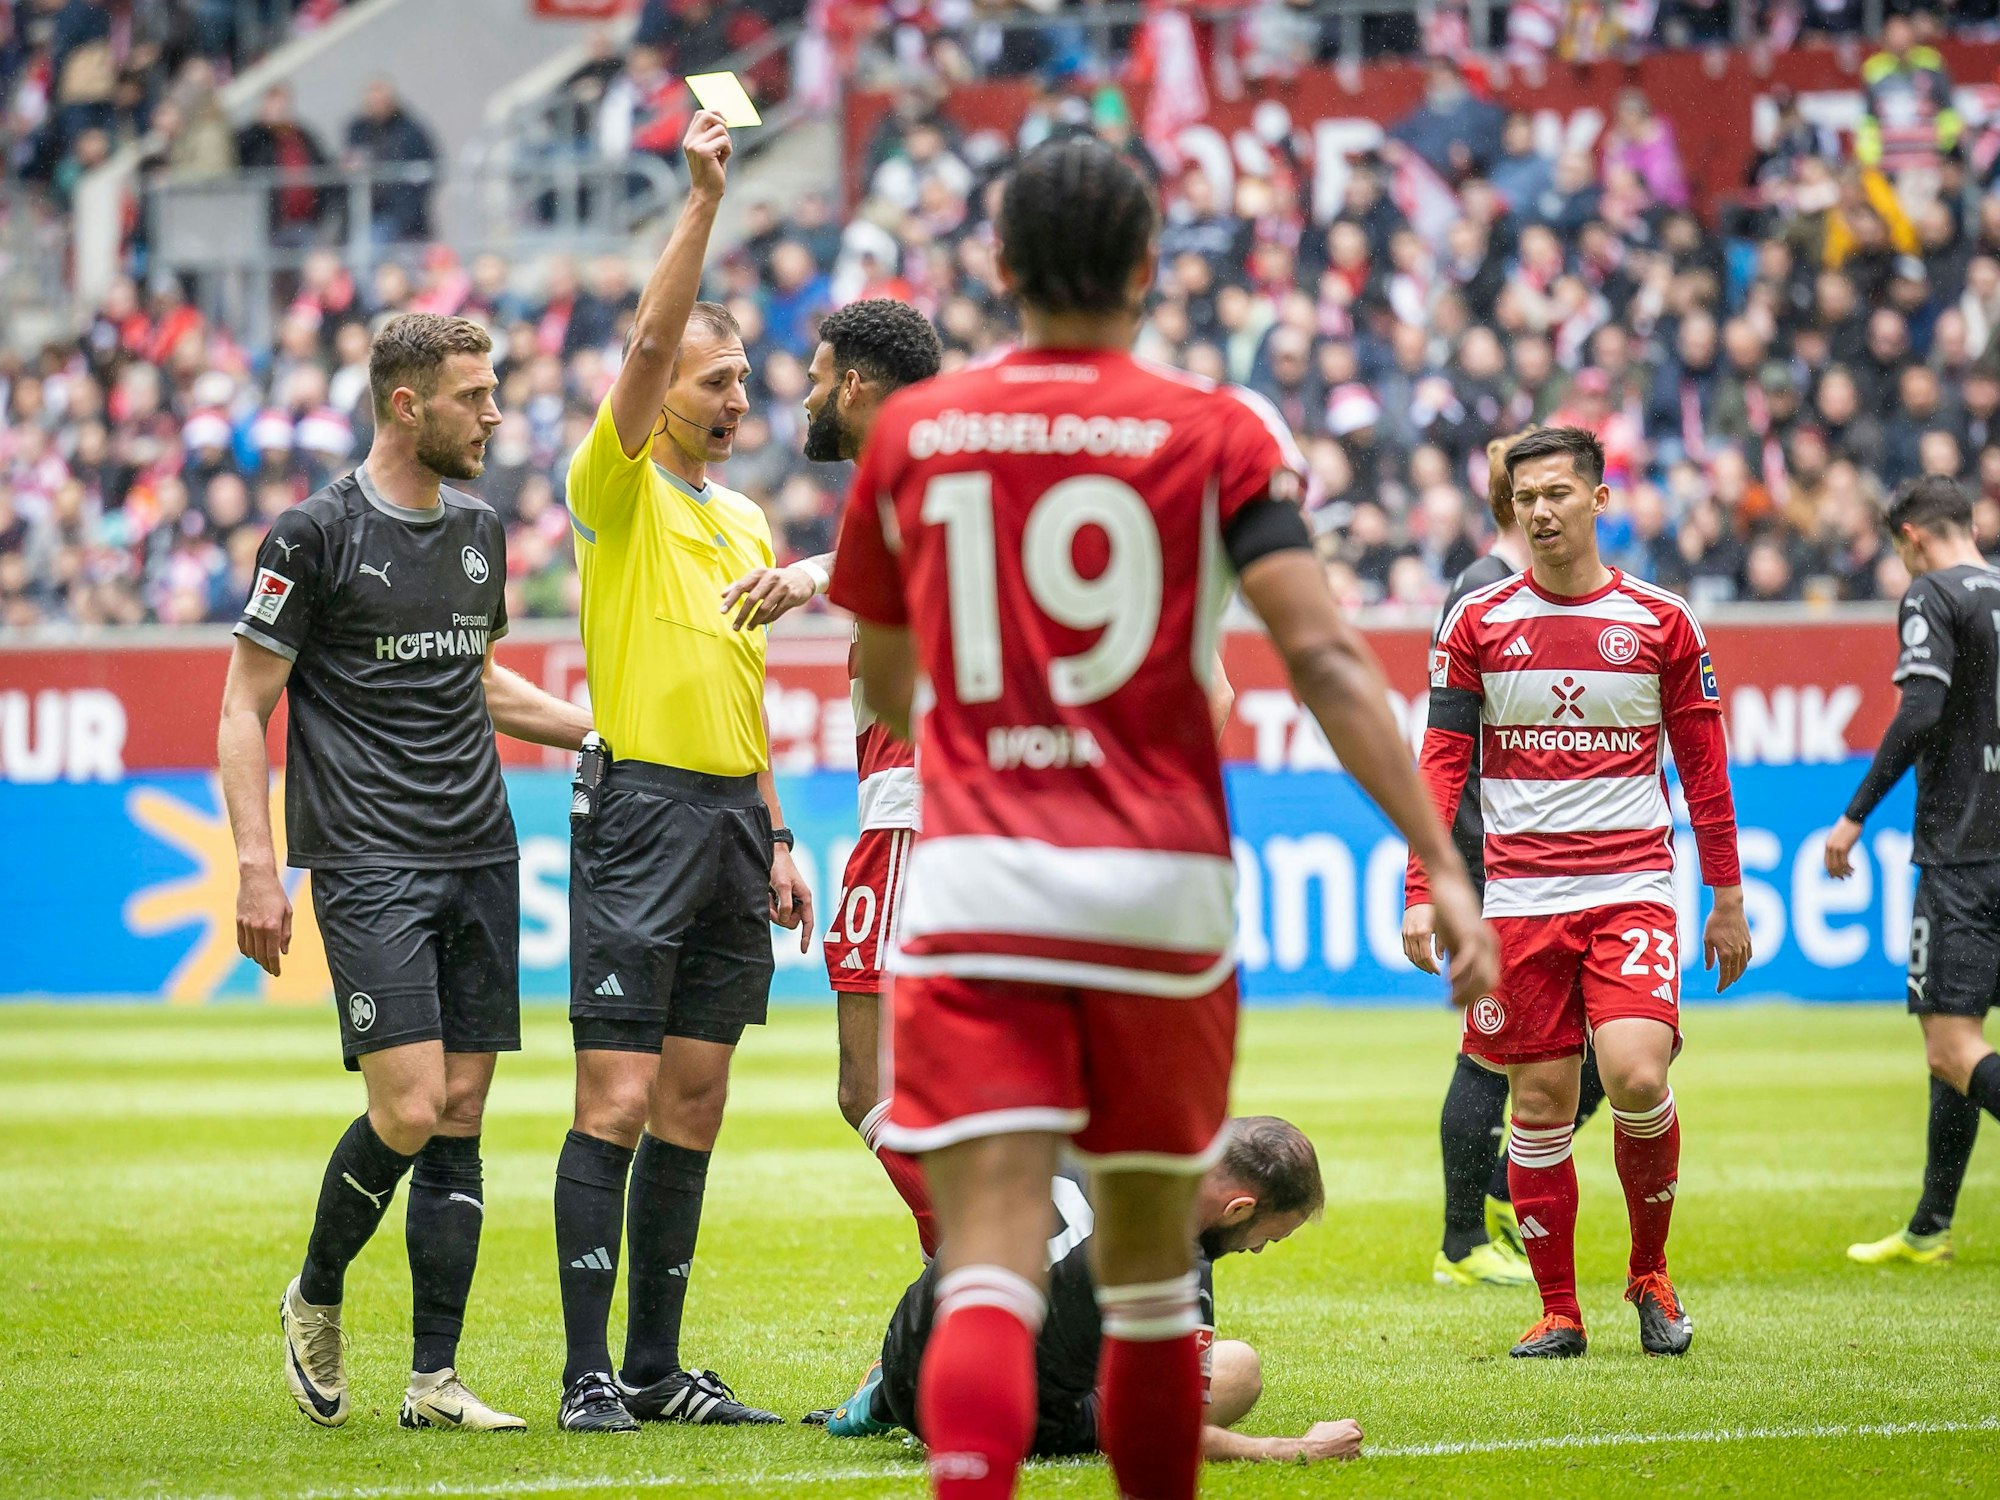 Schiedsrichter Florian Heft zeigt Fortuna Düsseldorfs Jamil Siebert im Spiel gegen Greuther Fürth die Gelbe Karte.